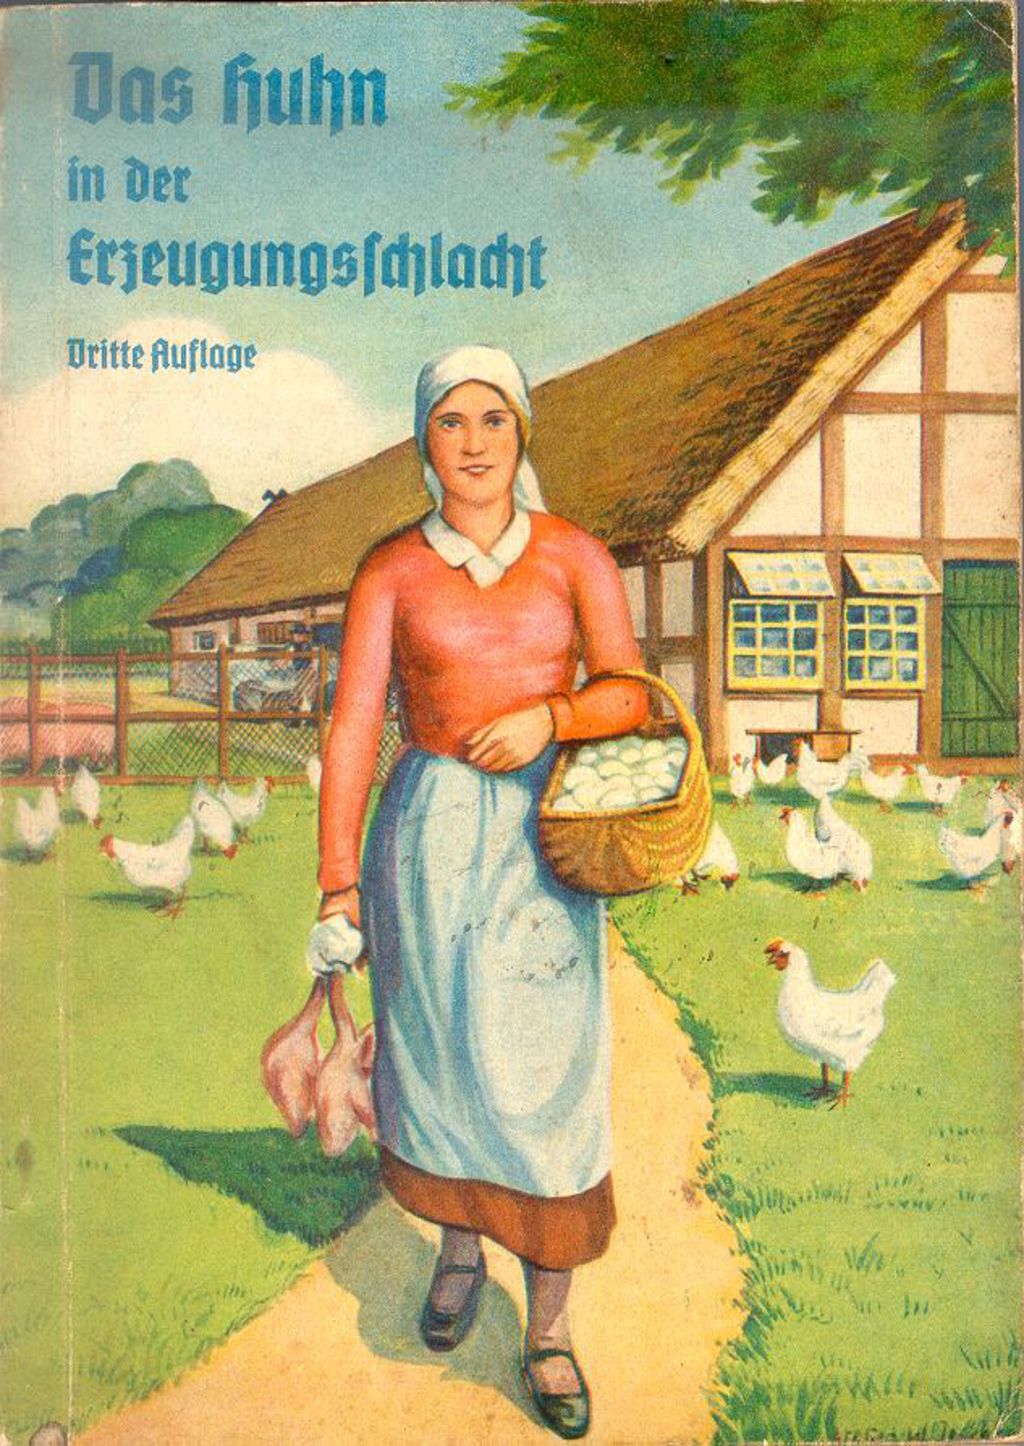 Exponat: Propagandaschrift: "Das Huhn in der Erzeugungsschlacht", 1940